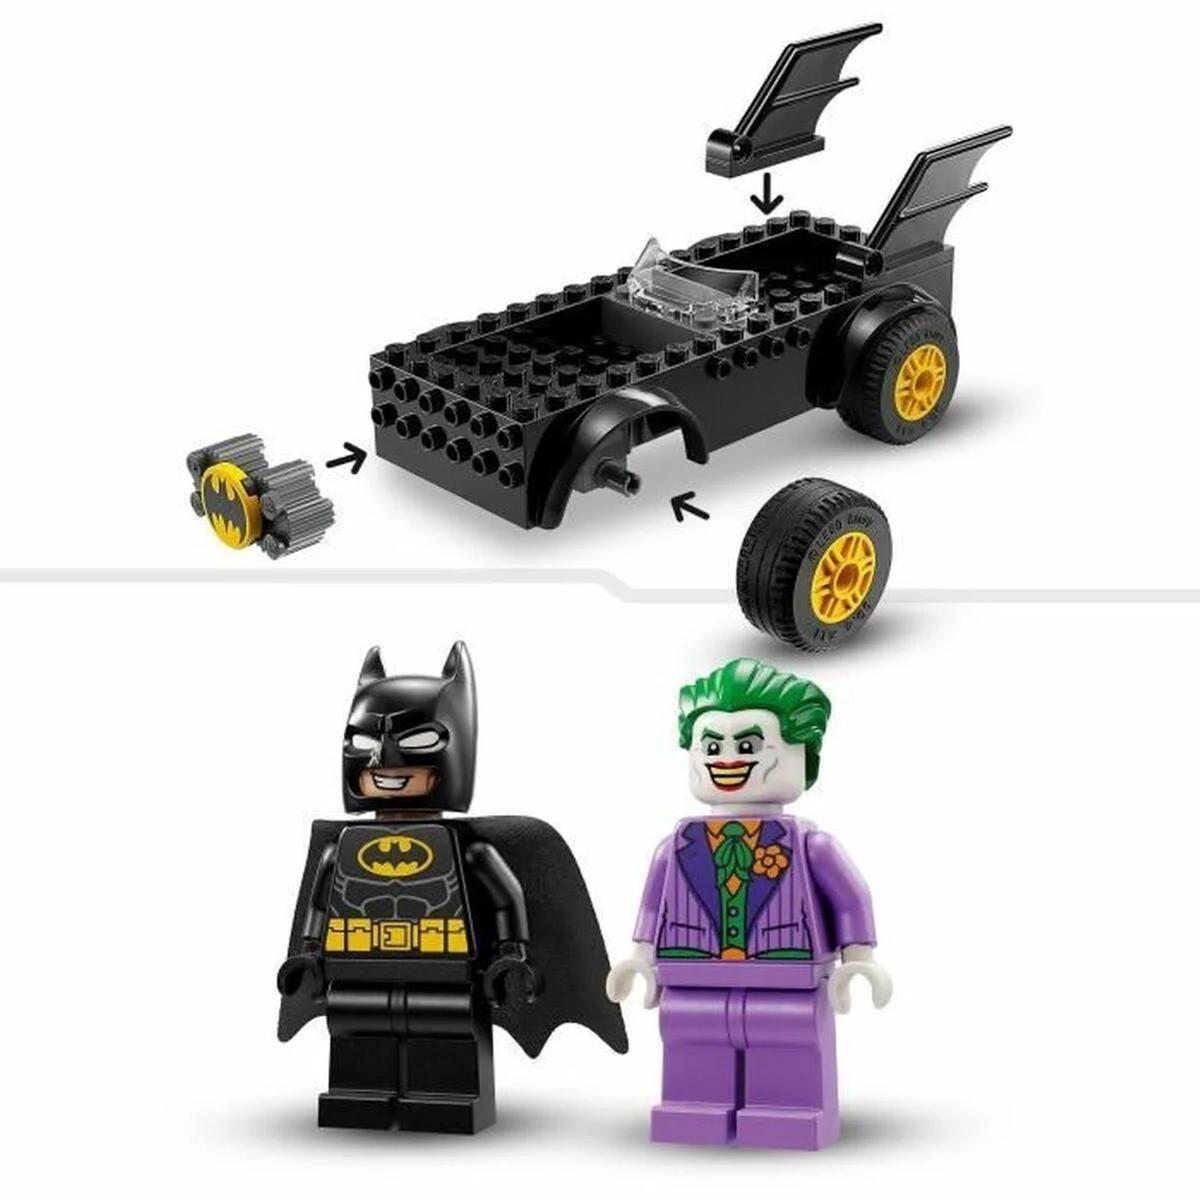 LEGO - Batman - Persecución en el Batmobile: Batman contra El Joker - Lego  DC 934577 | Lego Dc Super Heroes | Toys"R"Us España